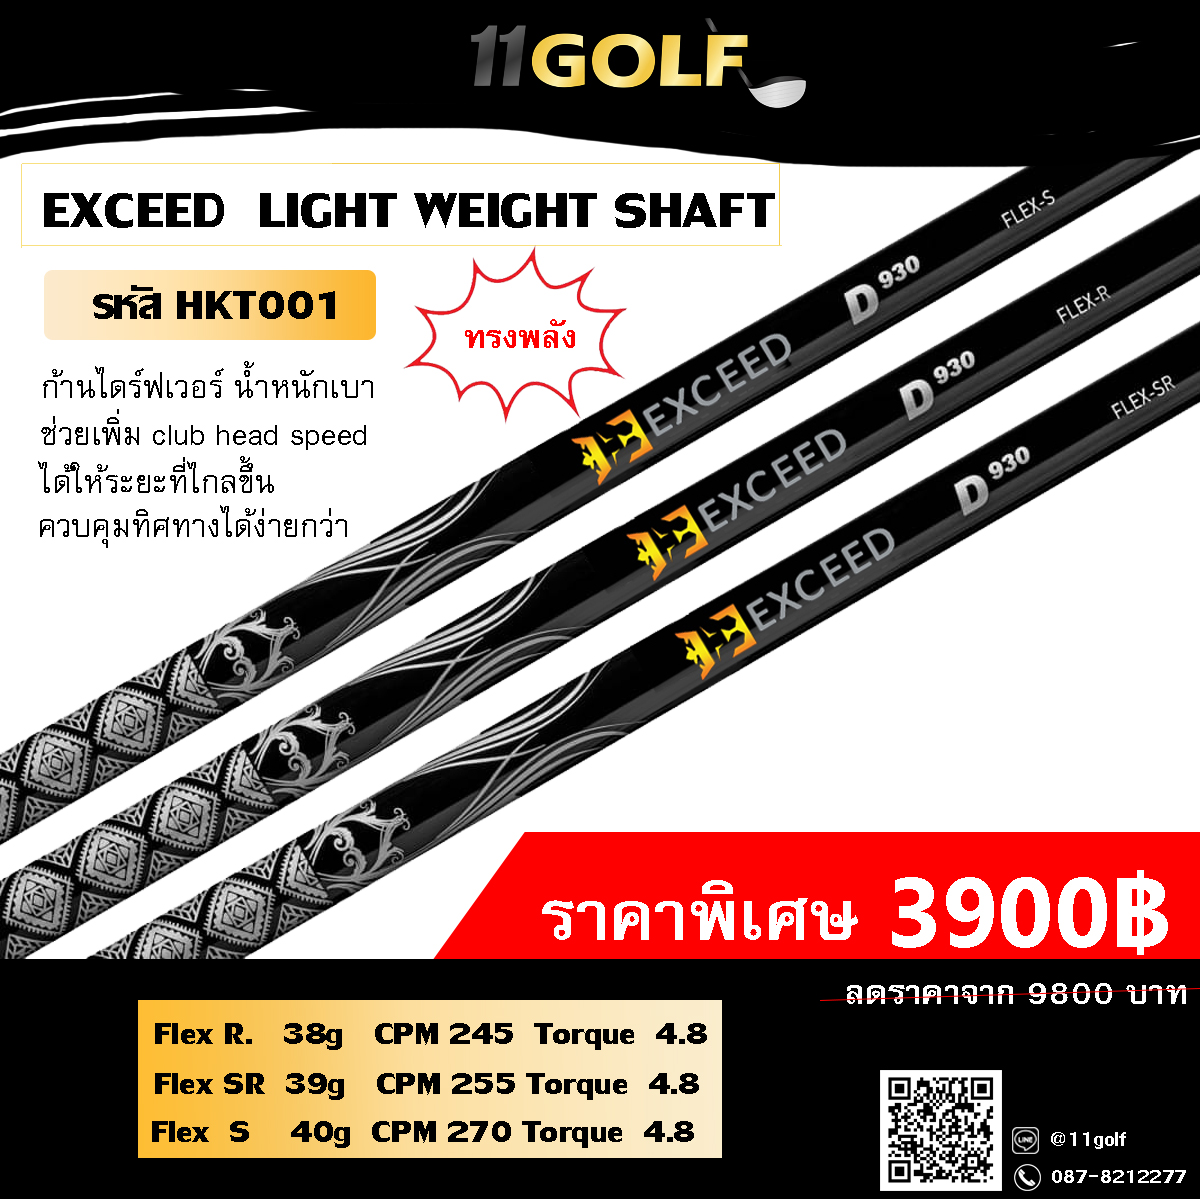 รหัสสินค้า HKT001 ไม้กอล์ฟพรีเมี่ยม!!! ราคาถูกที่สุดในประเทศไทย!!! EXCEED LIGHT WEIGHT SHAFT